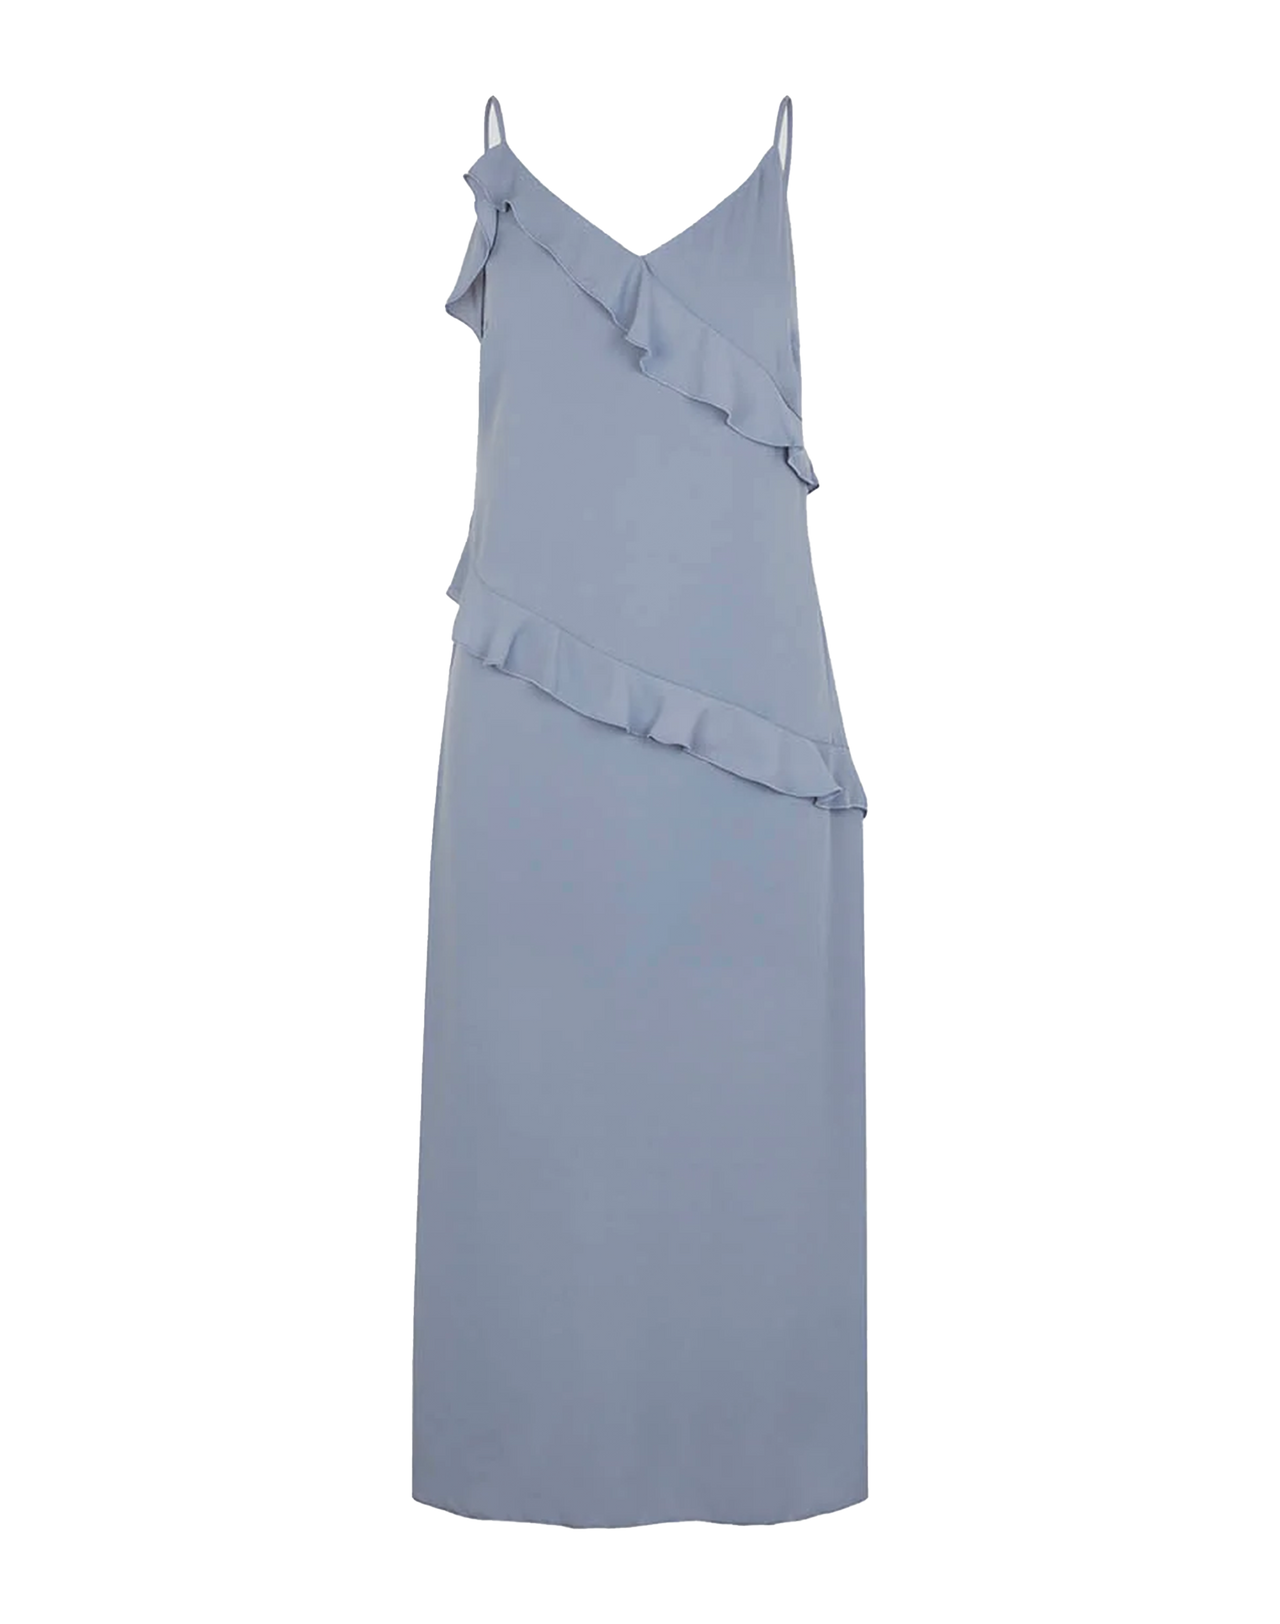 MODSTRÖM Halima Kleid in Silver Bullet, Ansicht Frontal